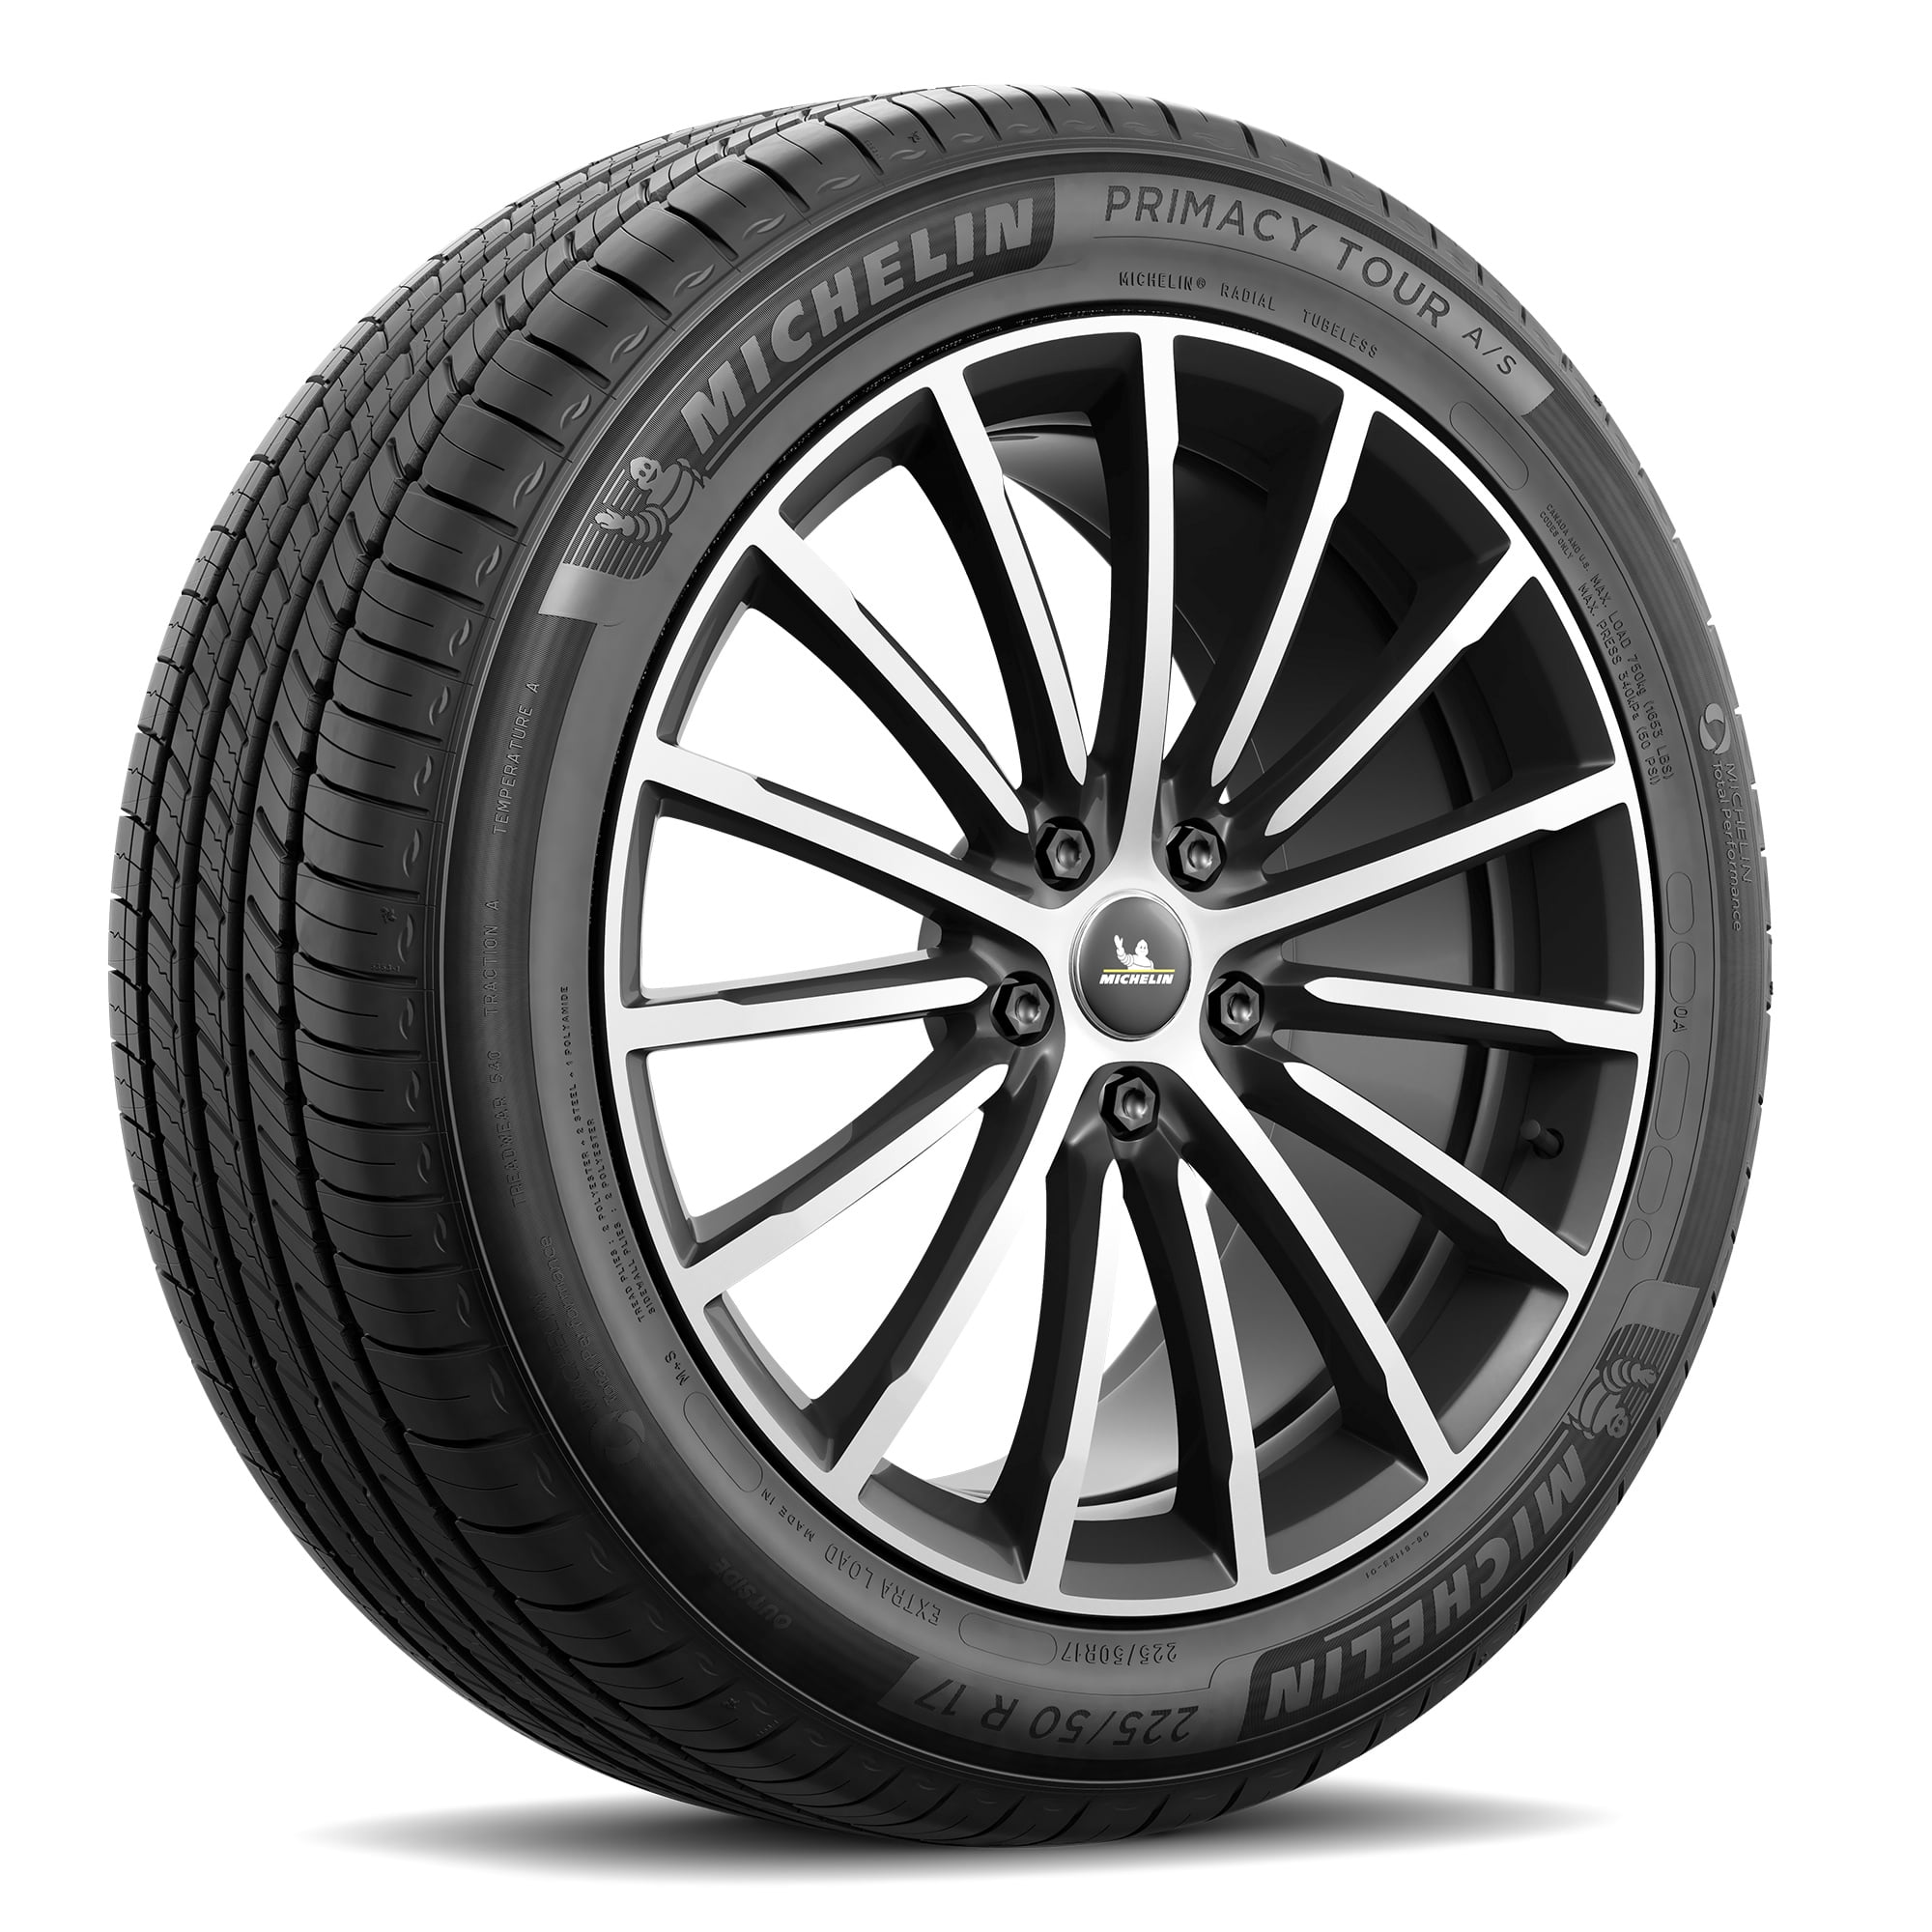 P235/60R18 102V Michelin Primacy MXM4 Touring Radial Tire